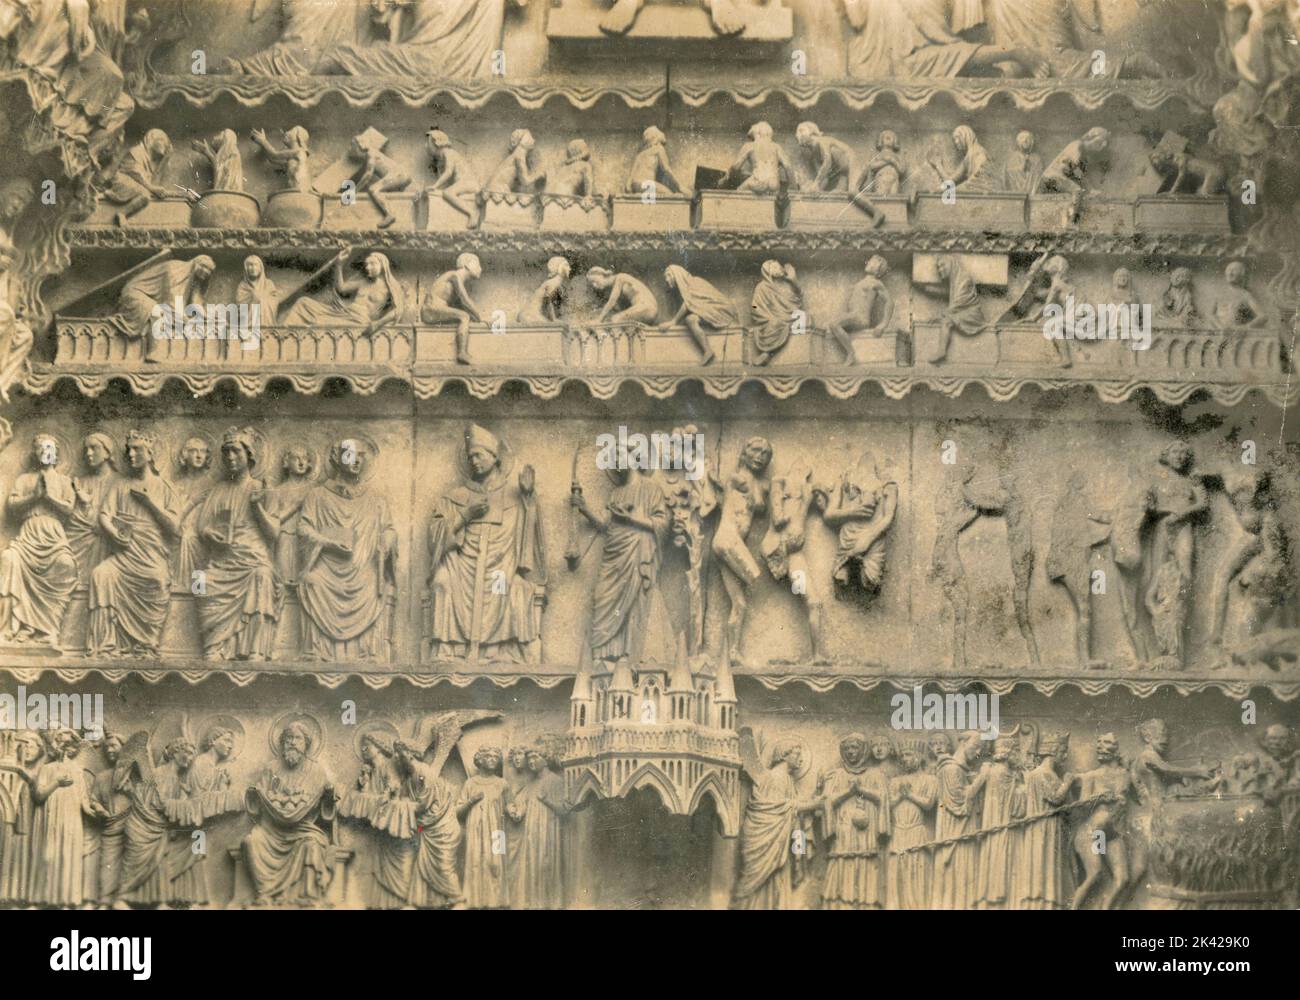 Statua della facciata settentrionale: Sentenza finale, Cattedrale di Reims, Francia, 1940s Foto Stock